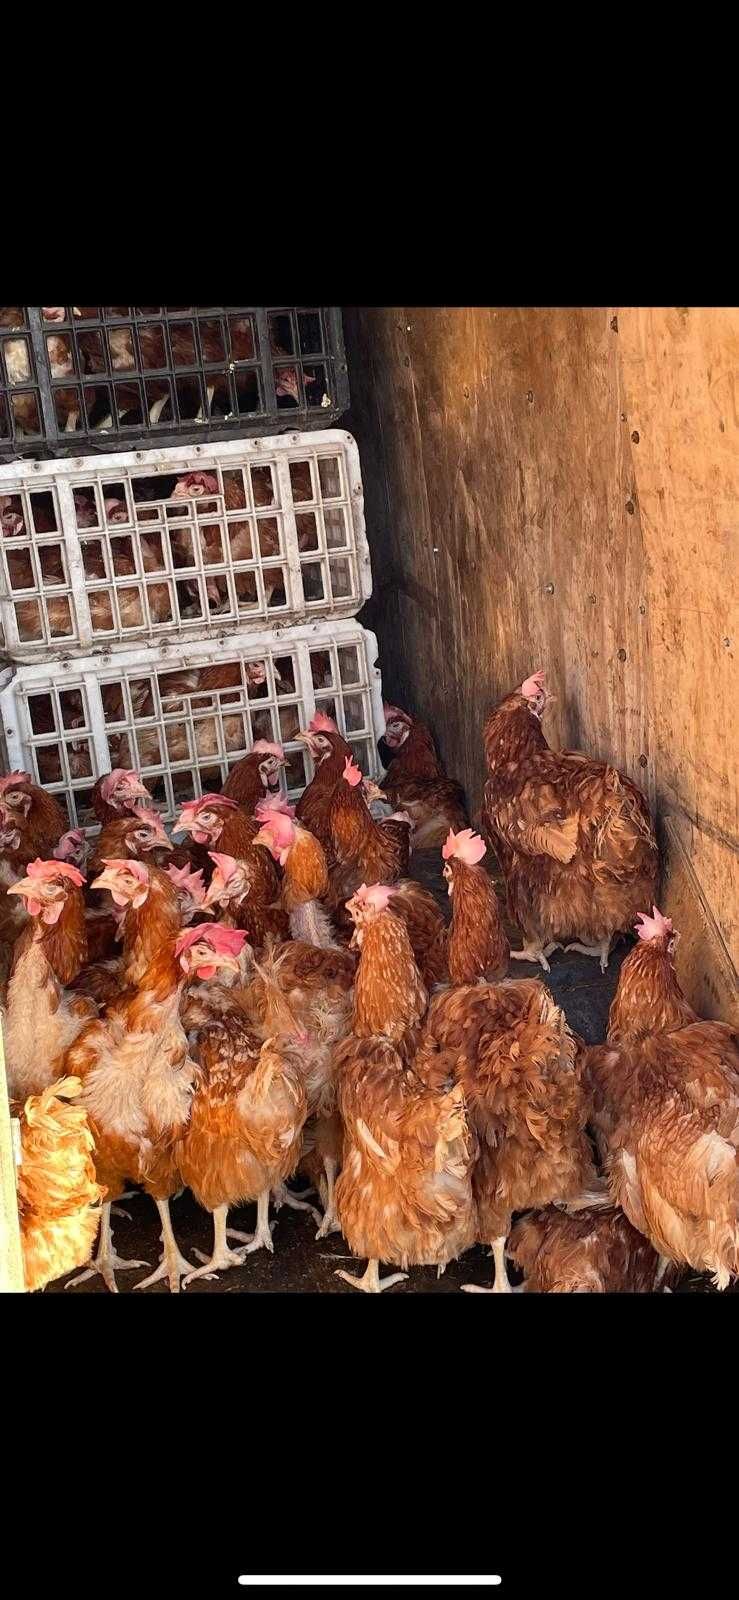 Găini ouătoare la angro facem reducerii